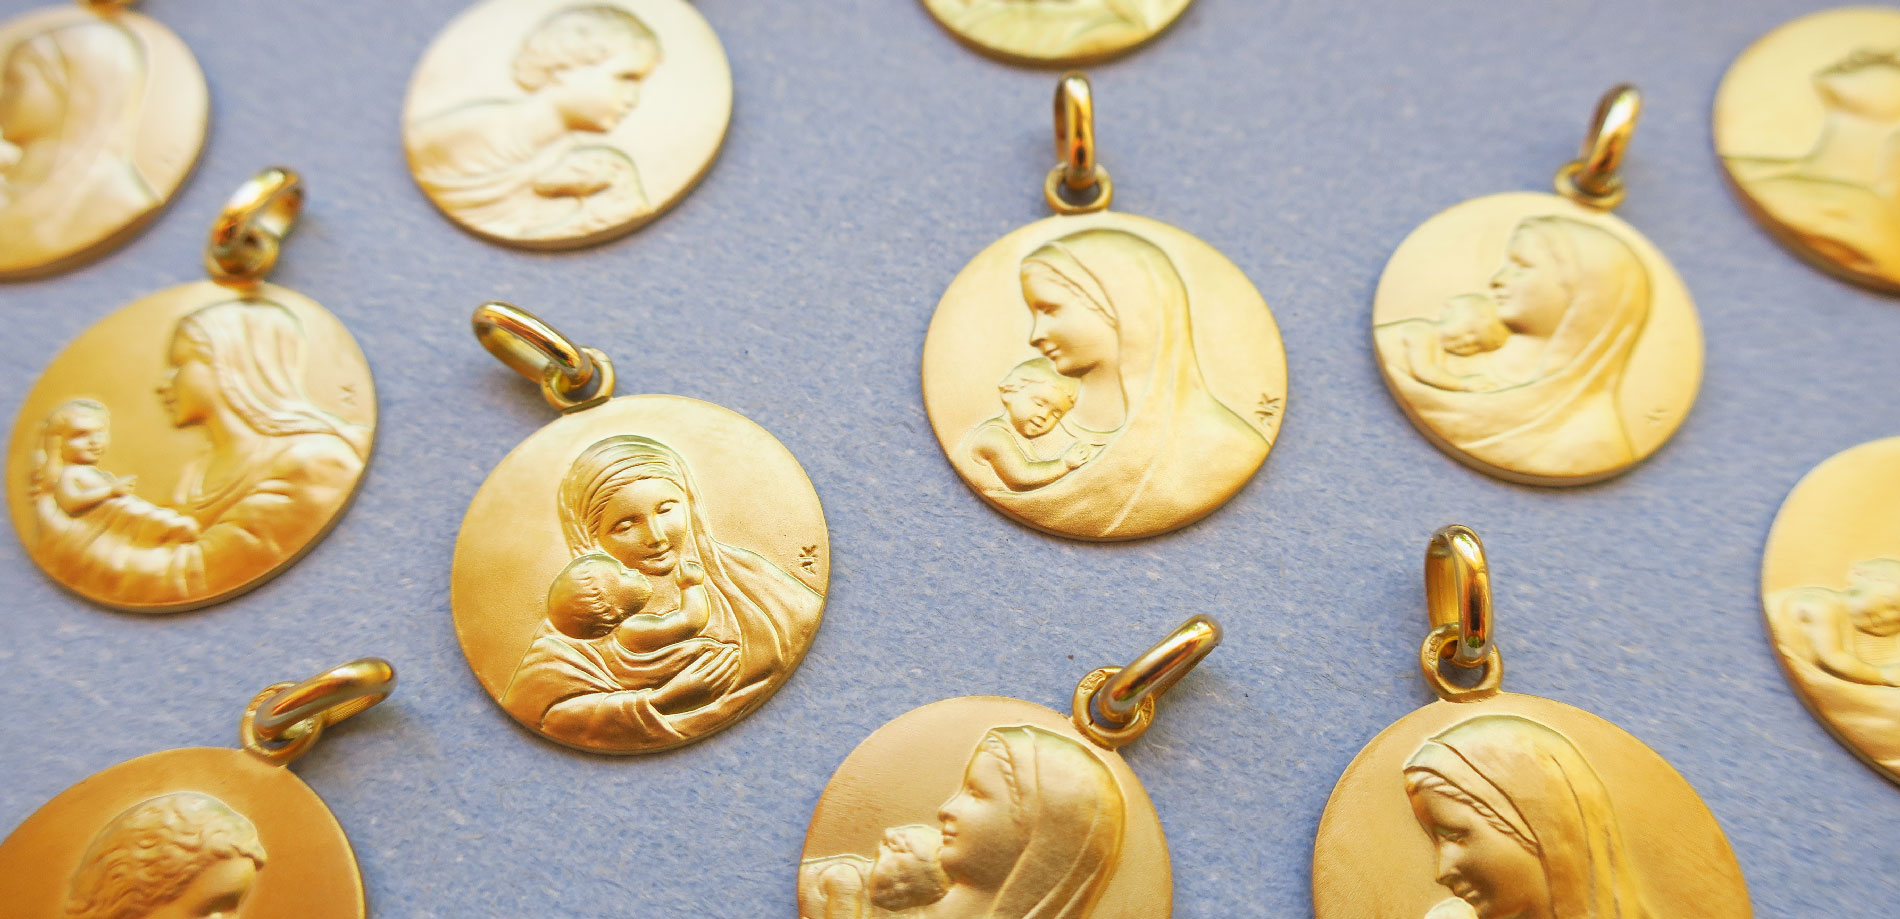 Médaille de baptême Enfant Jésus - Or jaune - Arthus Bertrand